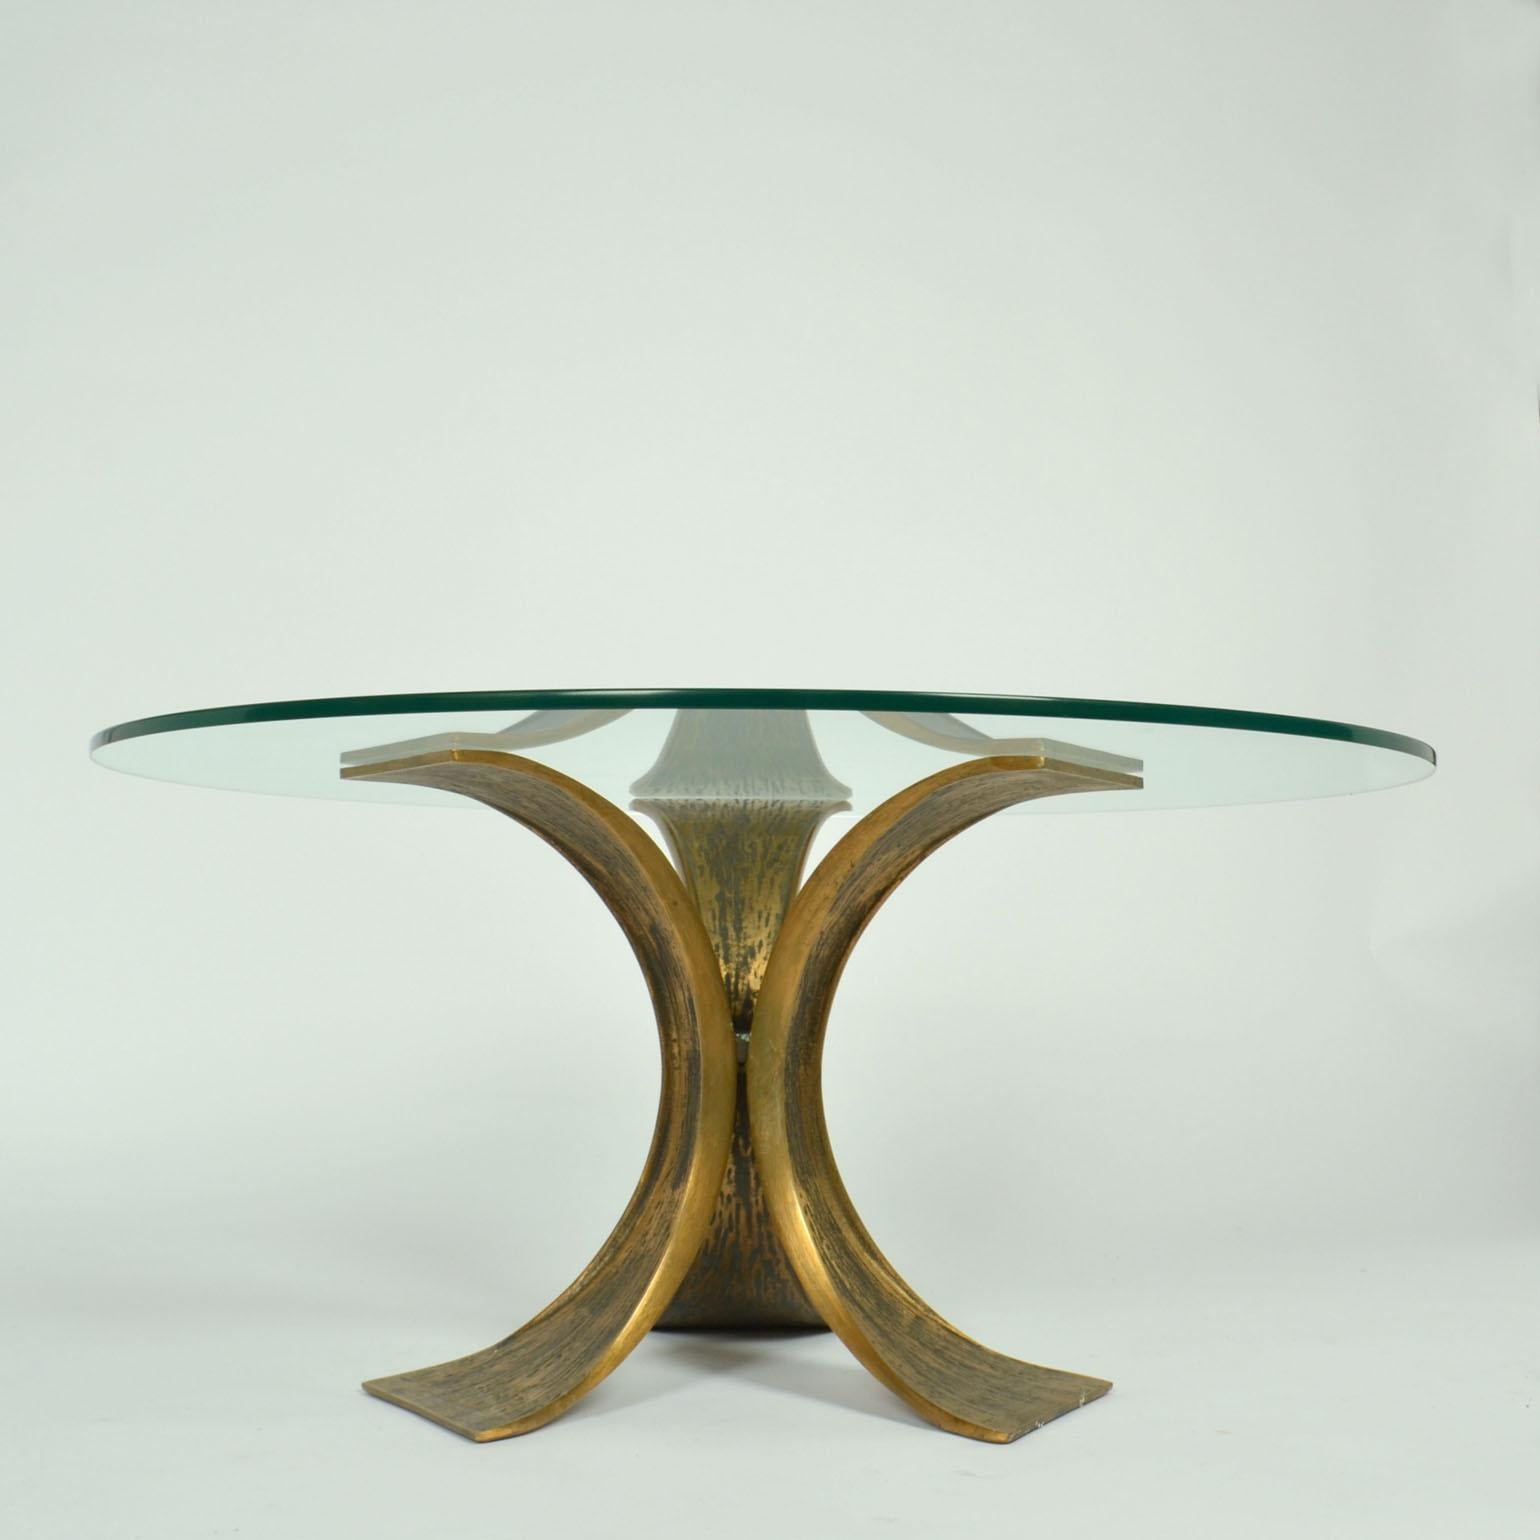 Table ronde sculpturale en bronze ailé avec plateau en verre de Luciano Frigeriom, né à Desio en 1928...
La base de la table est constituée de trois bras en bronze en forme de papillon, reliés entre eux par un centre hexagonal. Leurs ailes